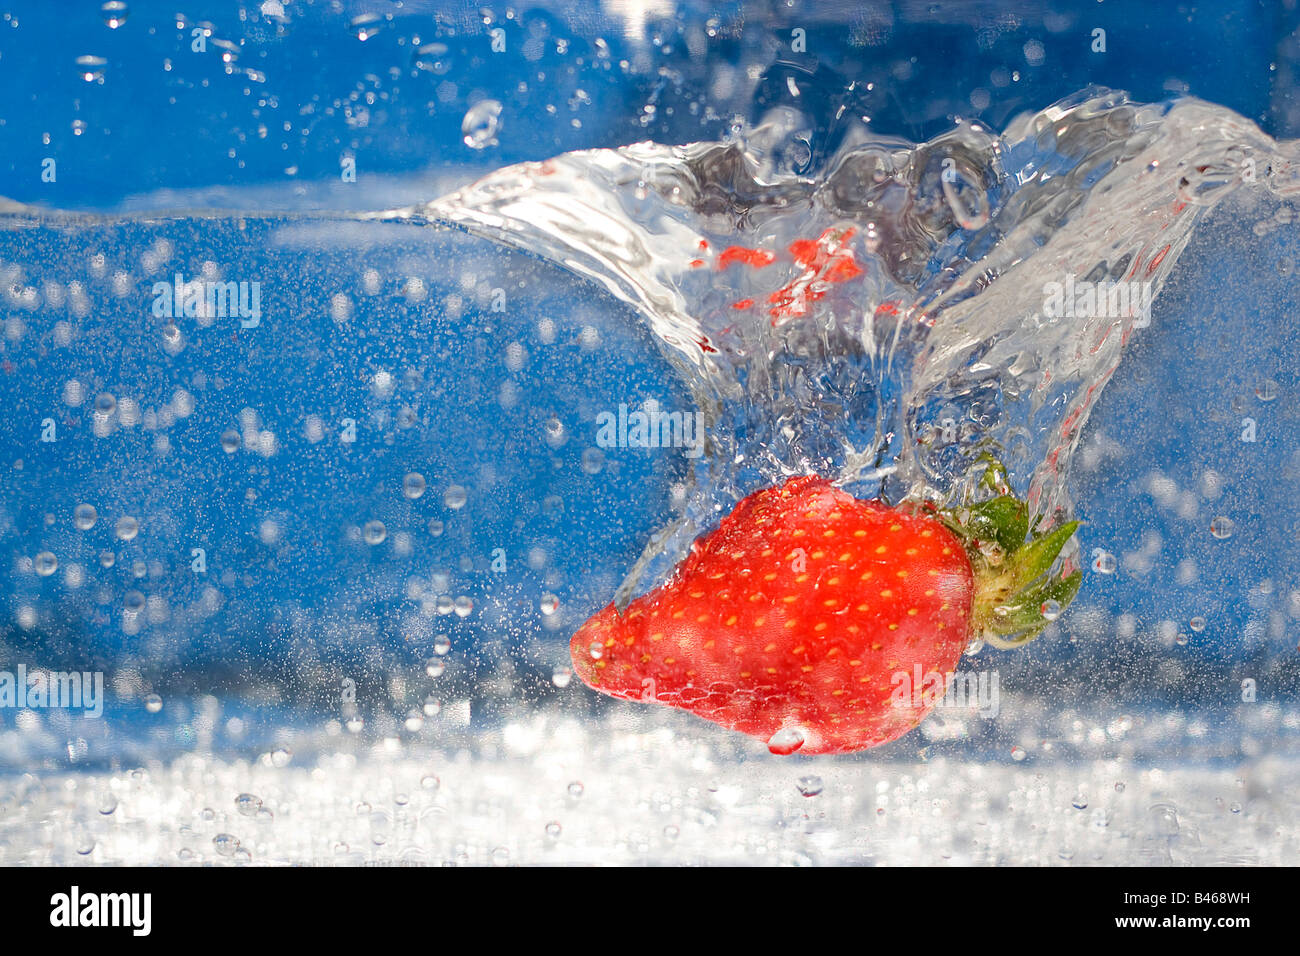 Une fraise rouge juteuse plongeant dans de l'eau Banque D'Images